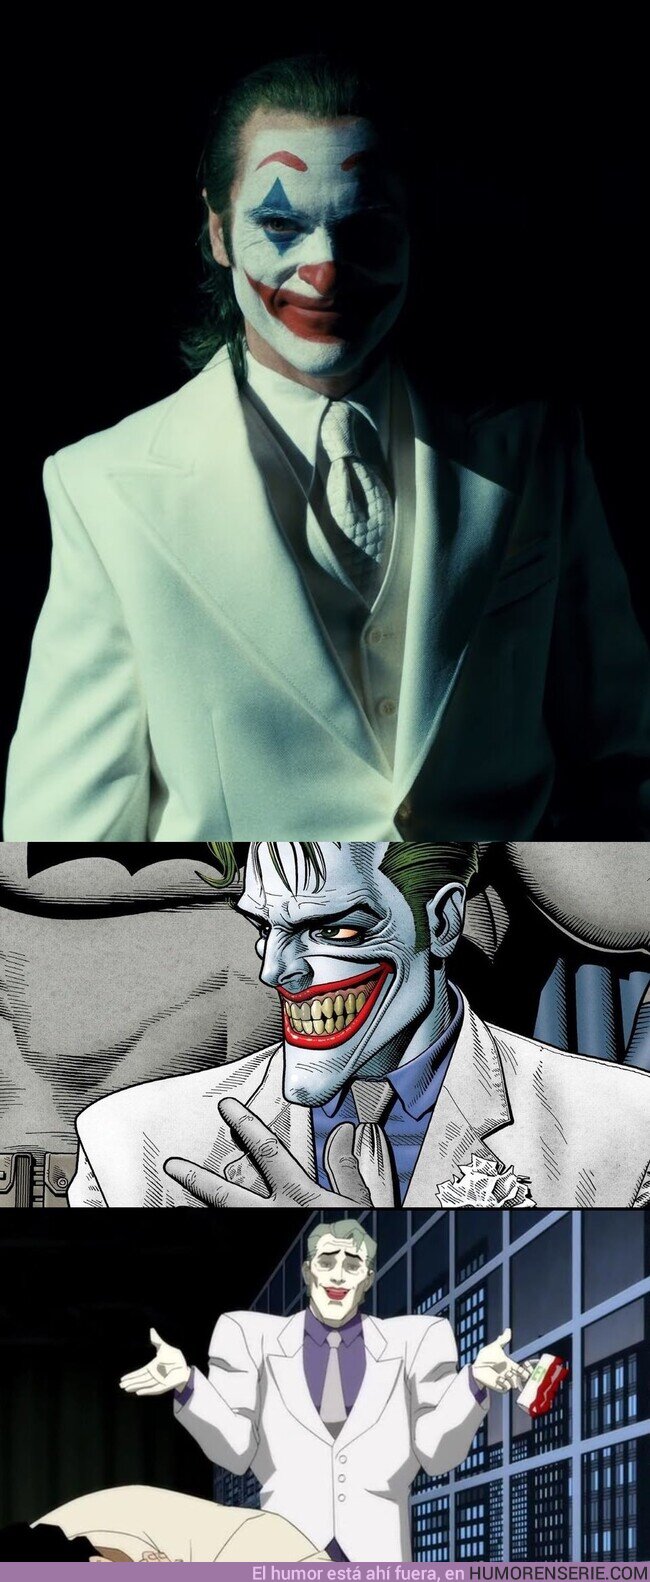 173056 - ¿Que quieren un Joker vestido de blanco?Pues démosles un Joker vestido de blanco., por @Somos_Geekk